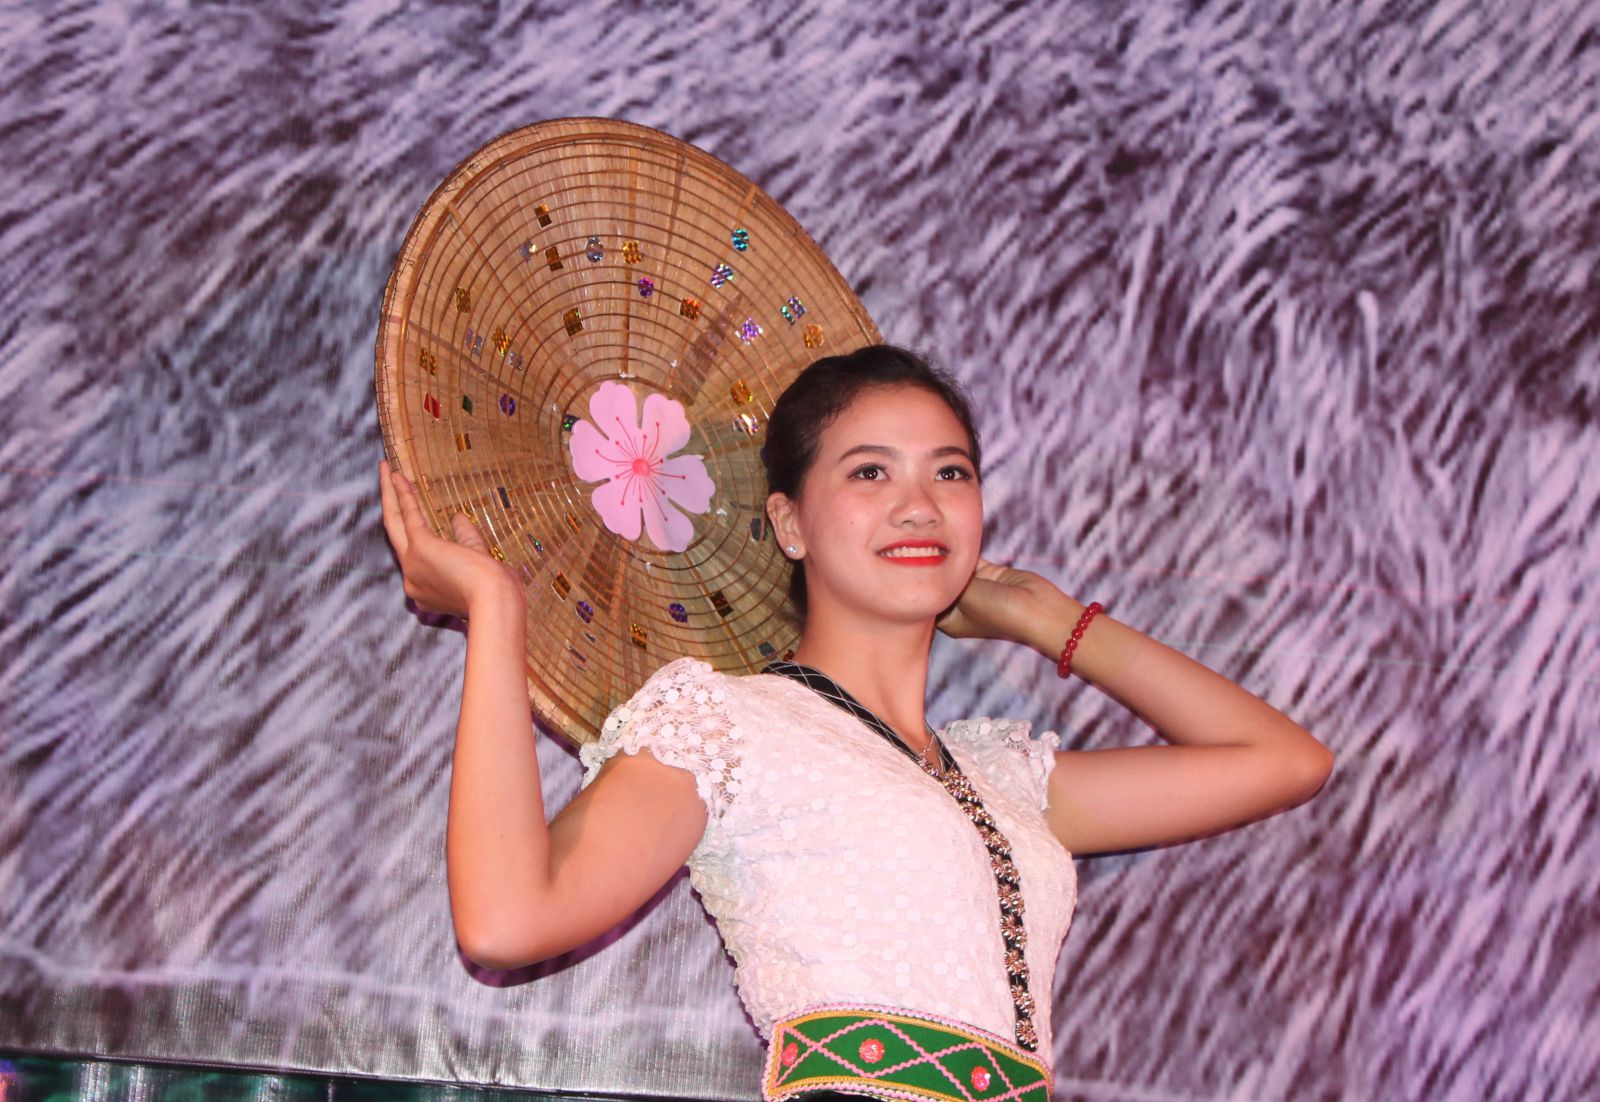 Hoa ban gắn liền với đời sống, sinh hoạt của người dân tộc Thái. Những cô gái Thái được ví như hoa ban của núi rừng Tây Bắc.